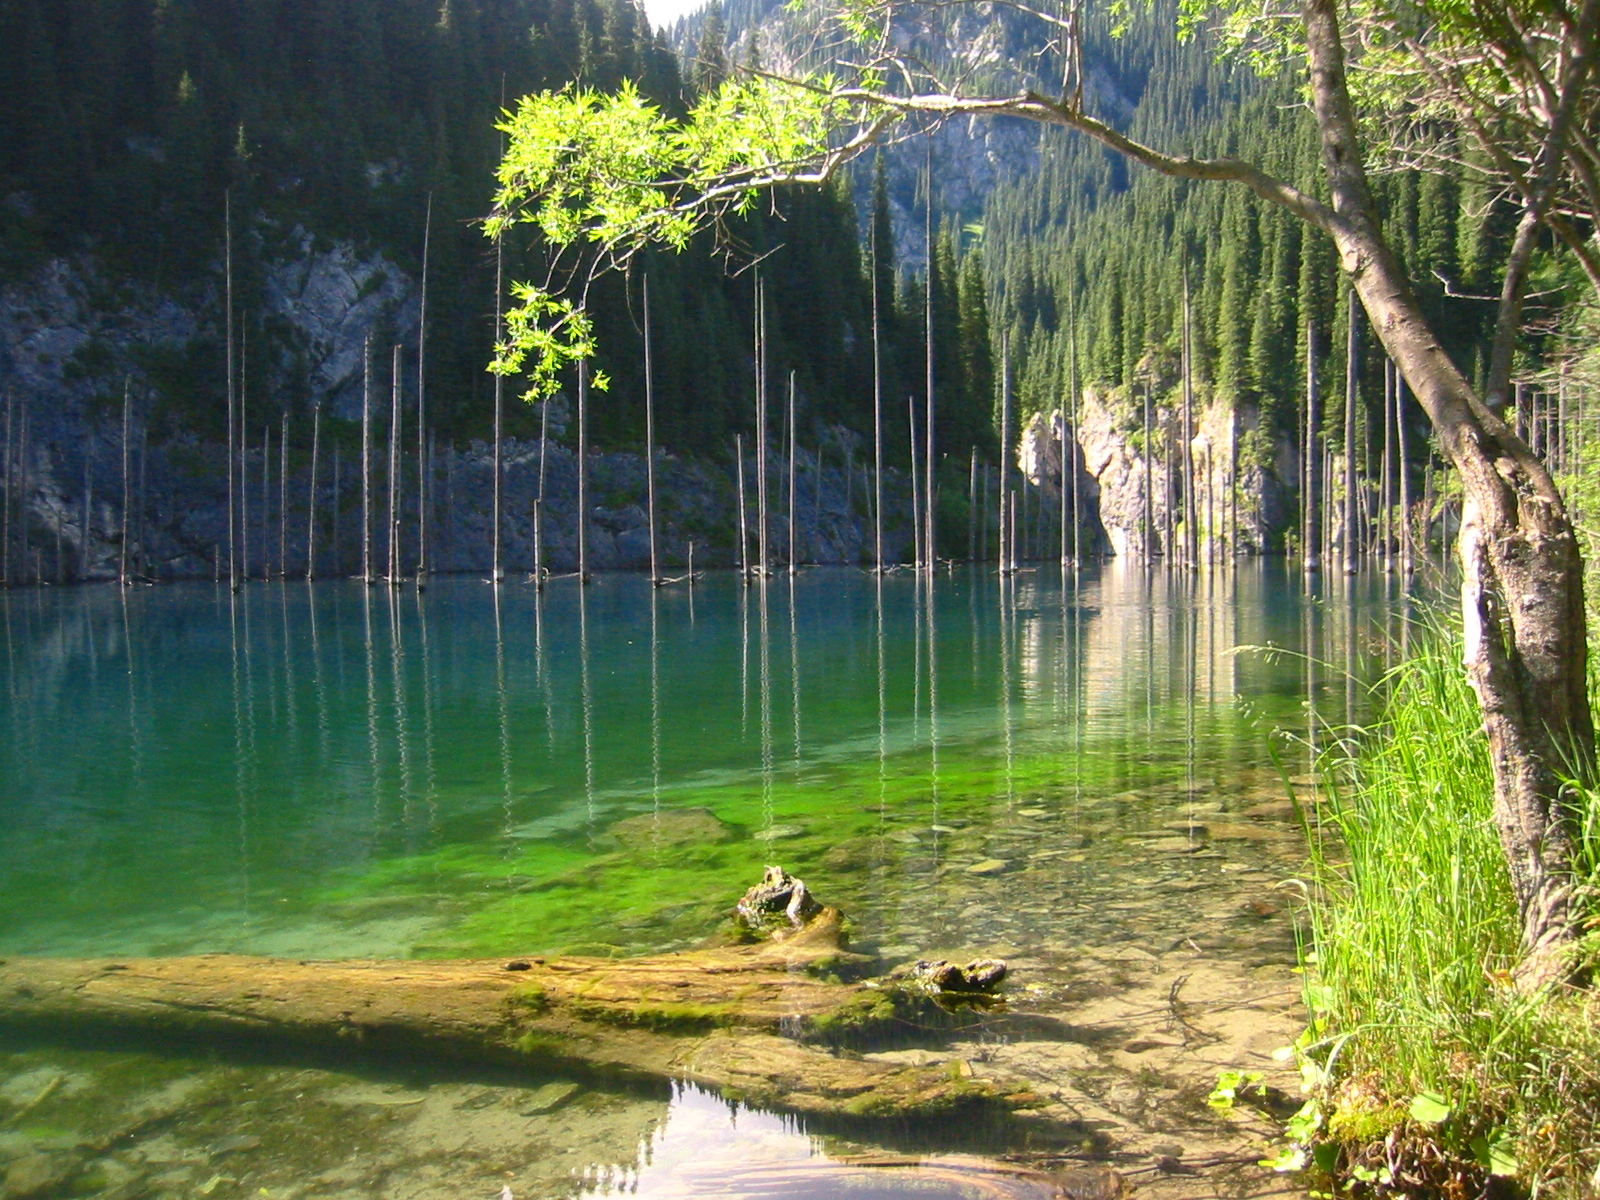 Hồ Chết: Hồ nước với tên gọi đáng sợ nhưng lại mang vẻ đẹp siêu thực khiến bạn không tin vào mắt mình - Ảnh 1.